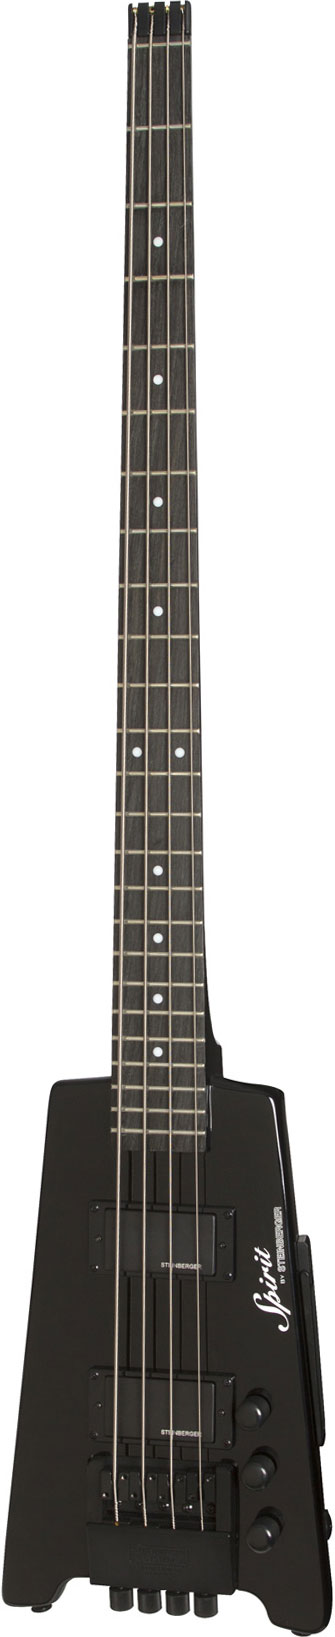 Steinberger Spirit XT-2 Standard Bass Black | guitarguitar